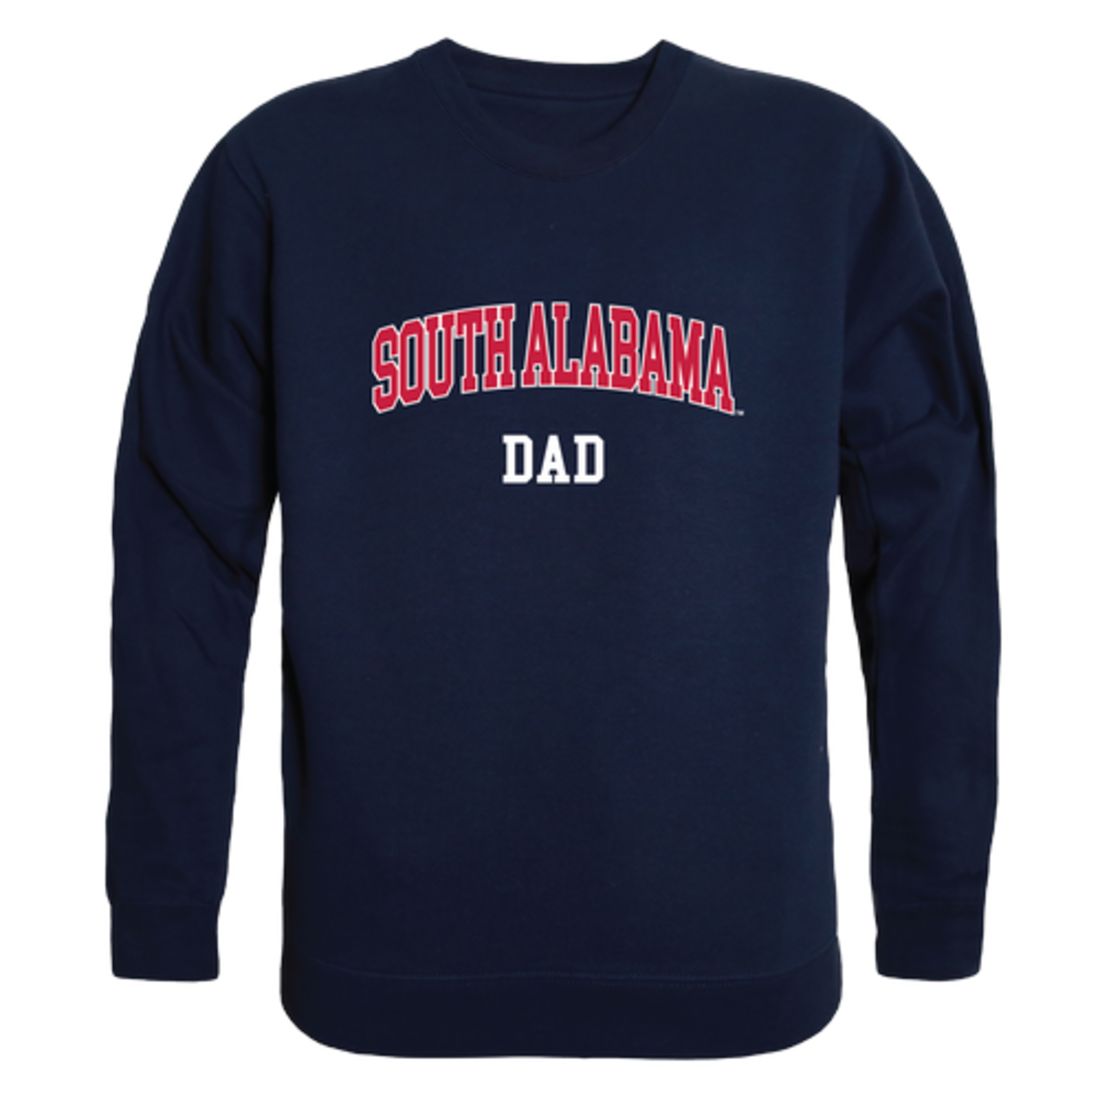 University of South Alabama Jaguars Dad Fleece Crewneck Pullover Sweatshirt Heather Grey-Campus-Wardrobe